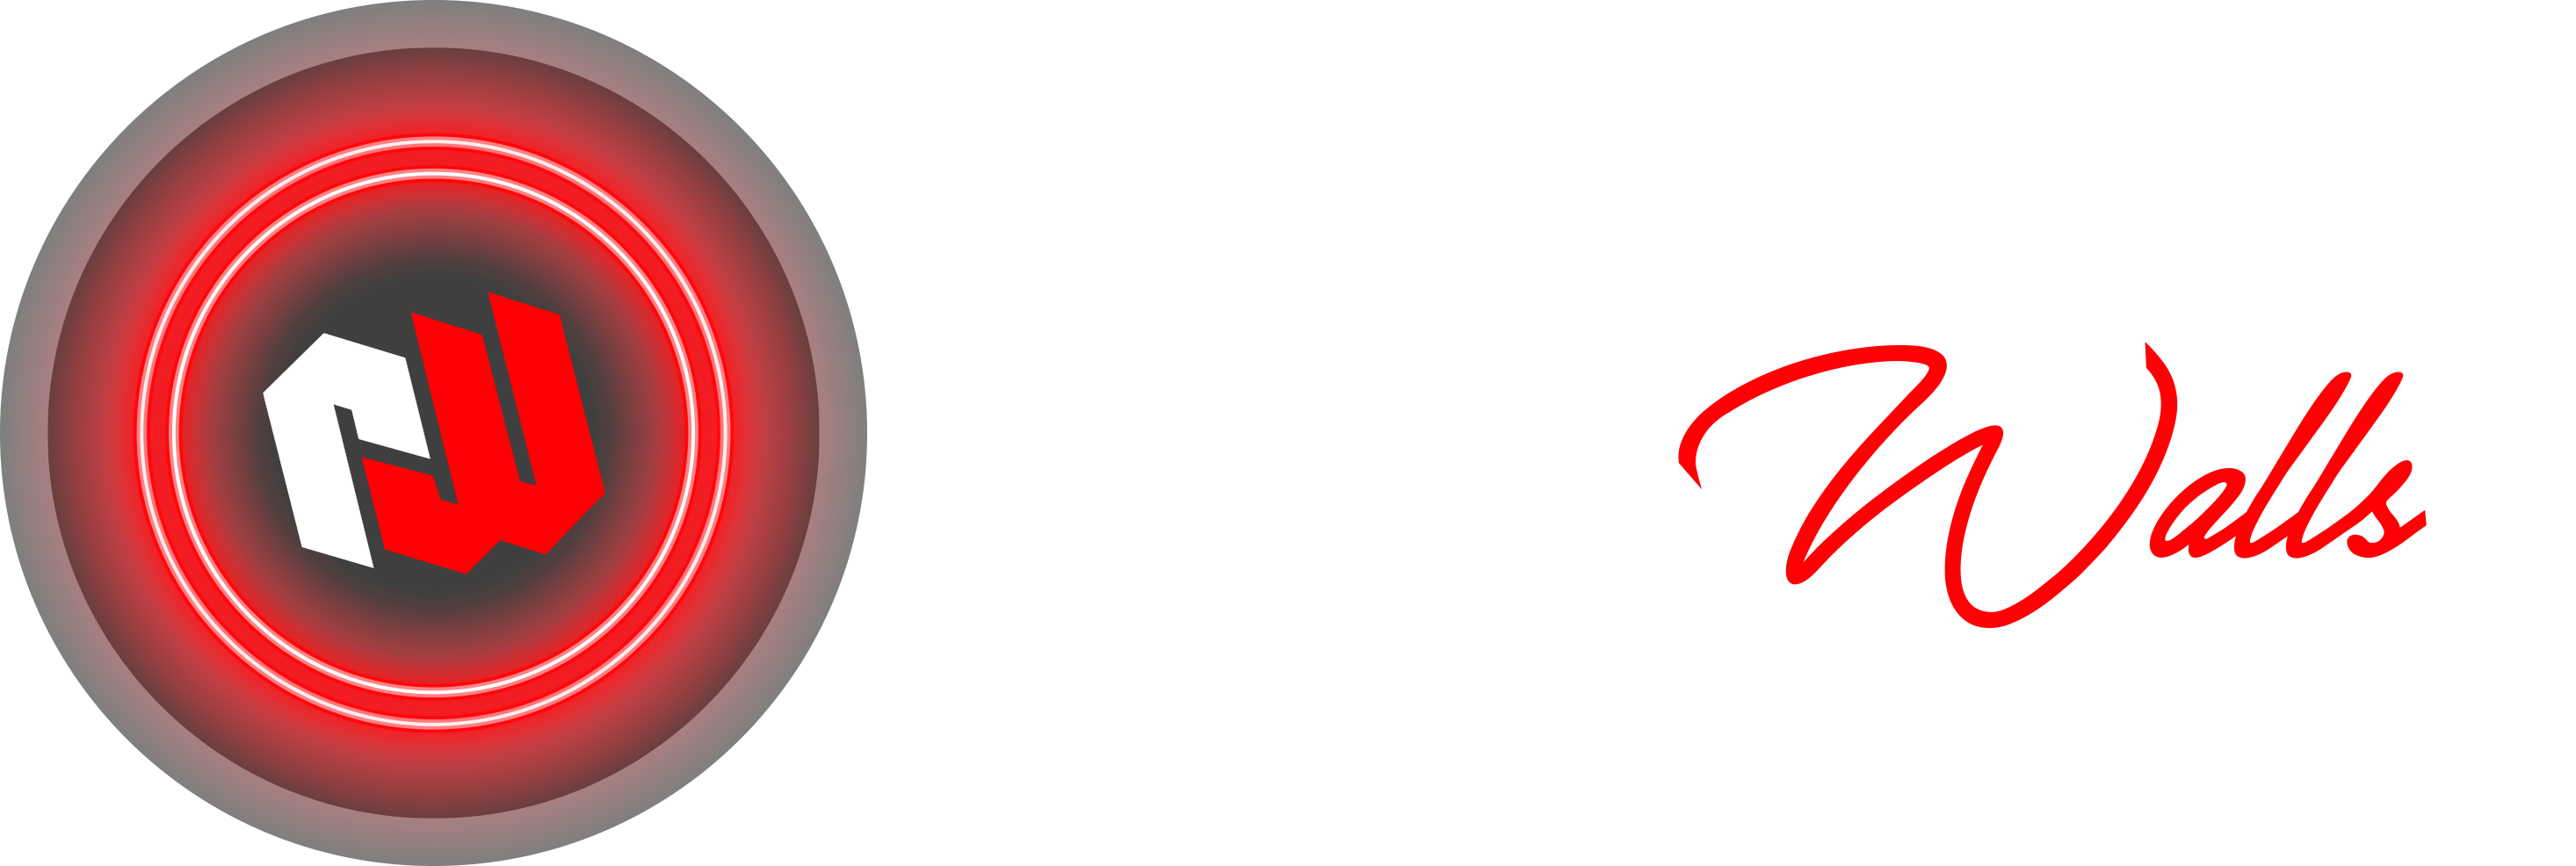 Neon Instagram Logo Vector Images (83)